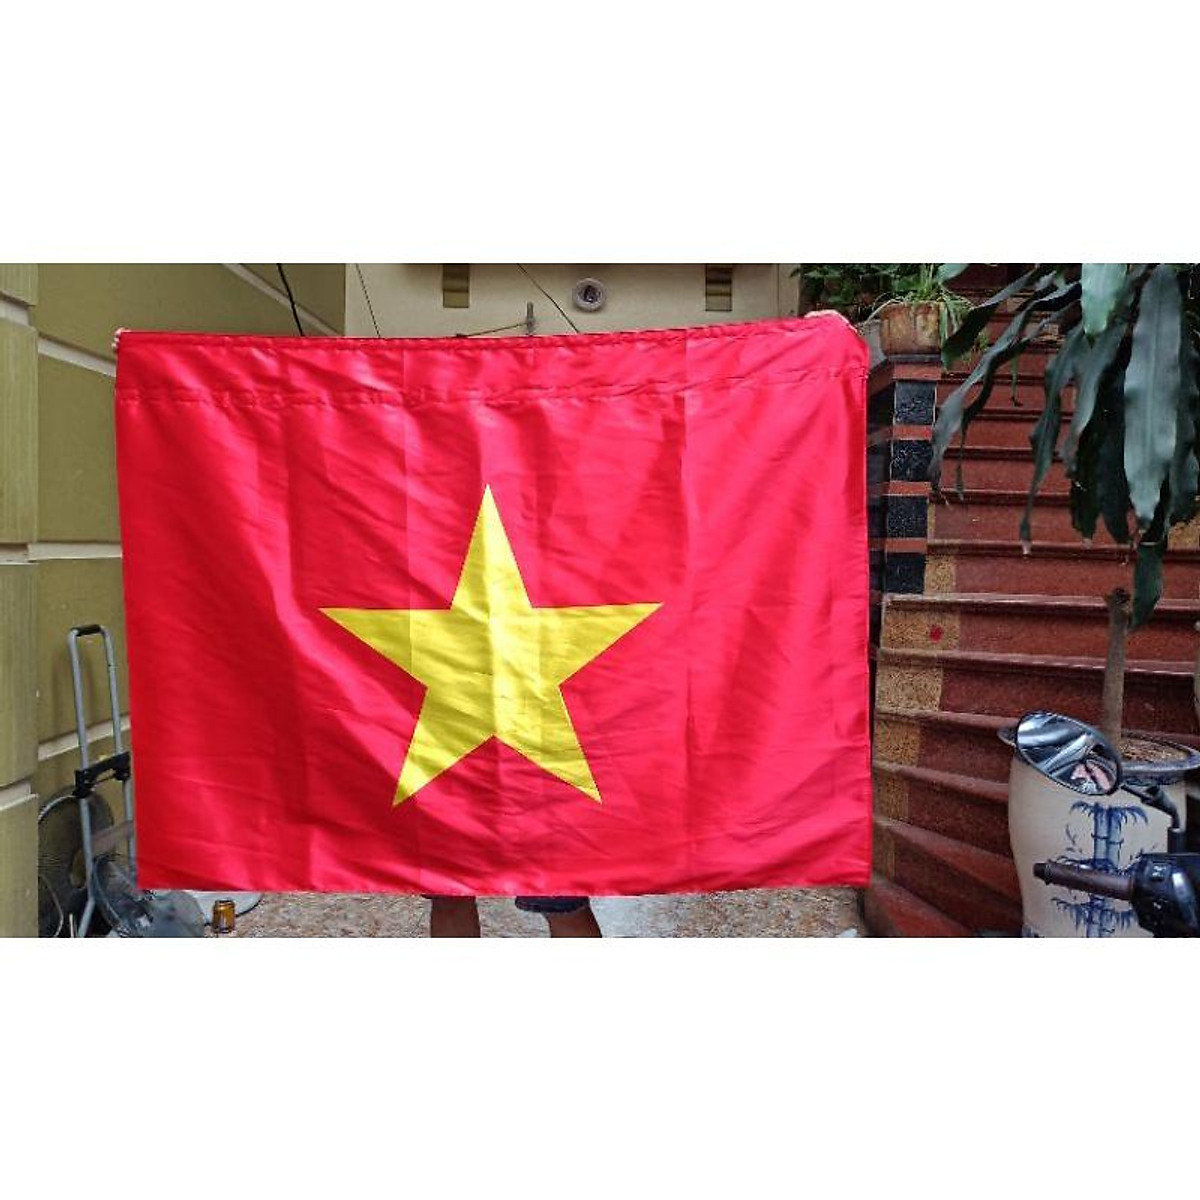 Quốc kỳ Việt Nam 1x1,5m in chuyển nhiệt may theo yêu cầu - Trang ...